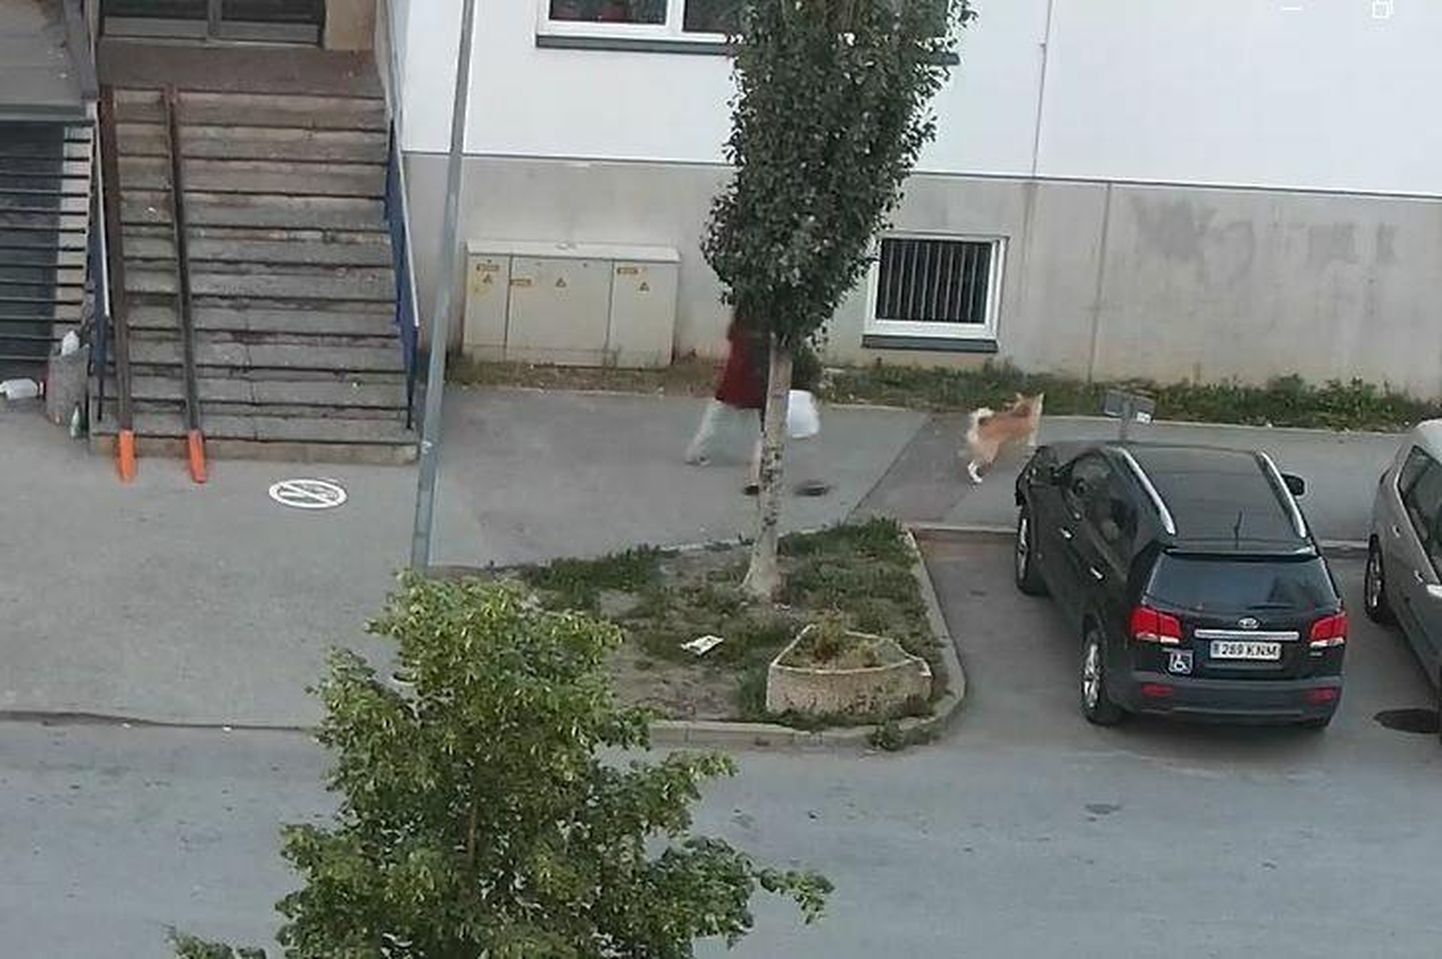 12-летняя девочка вместе с собакой пошла провожать подругу на автобус. Через несколько минут Виталий Николаев отобрал у нее собаку.